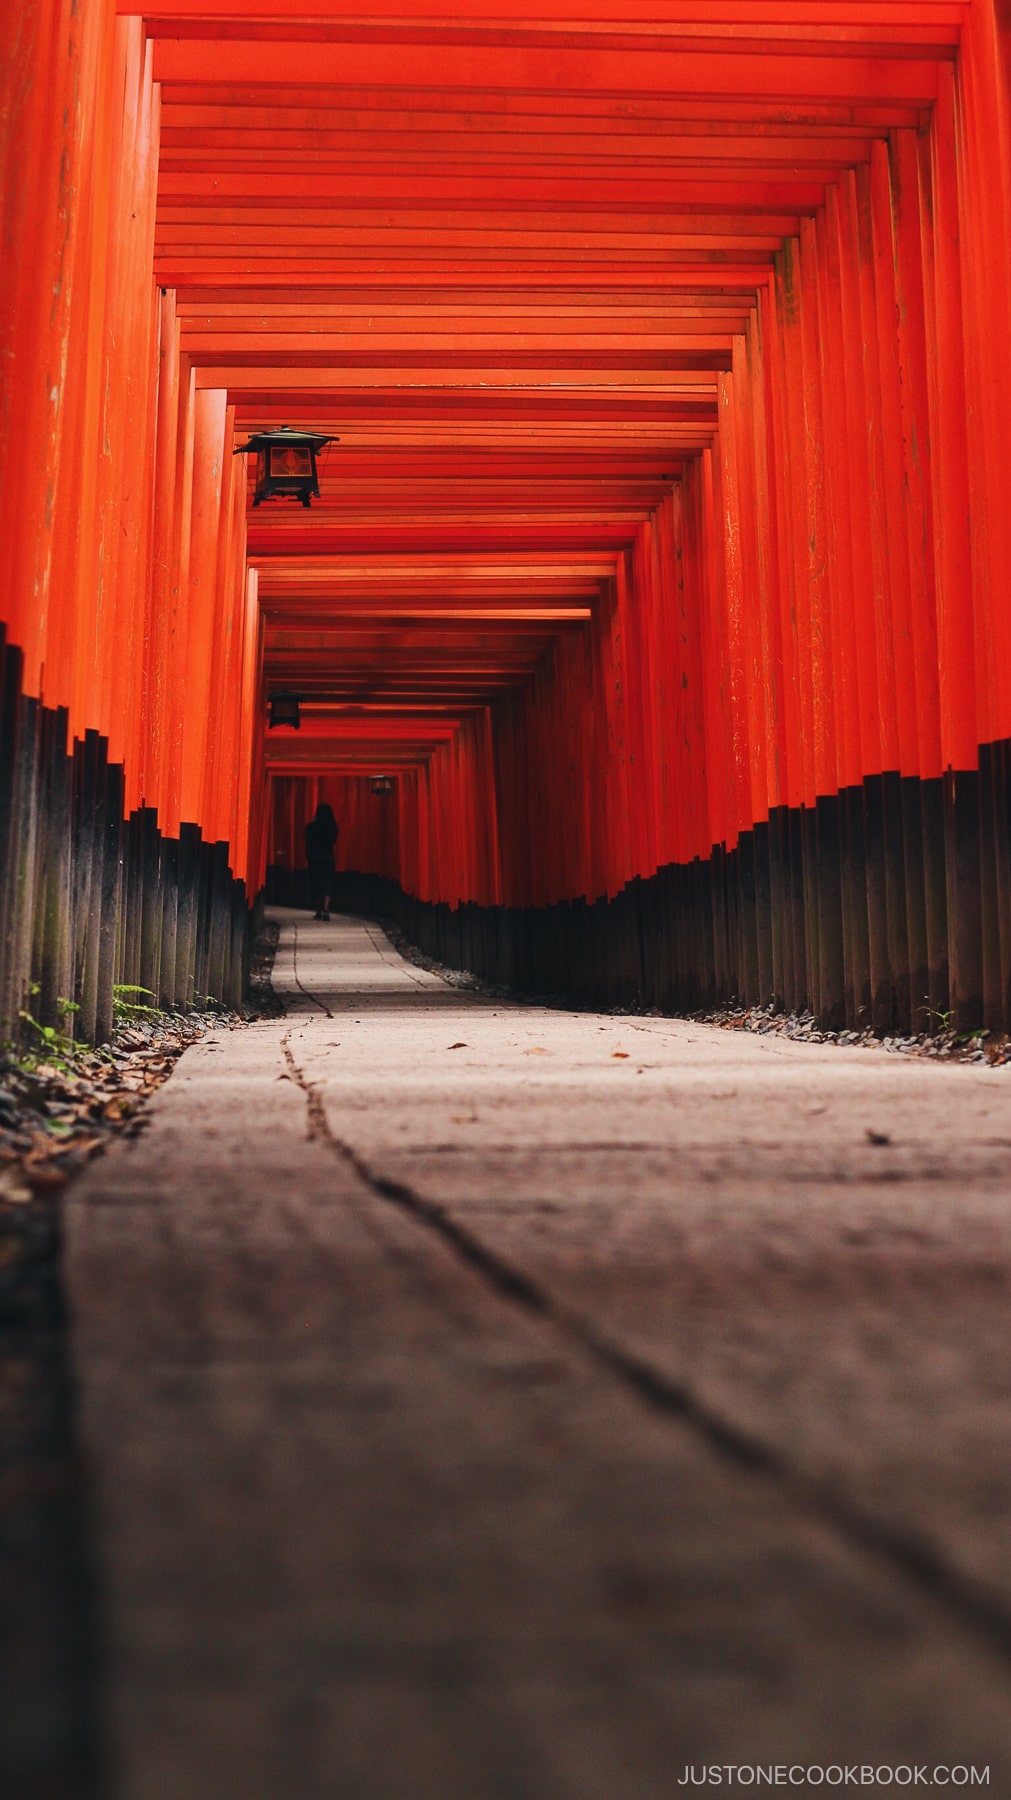 Fushimi Inari Torii gates